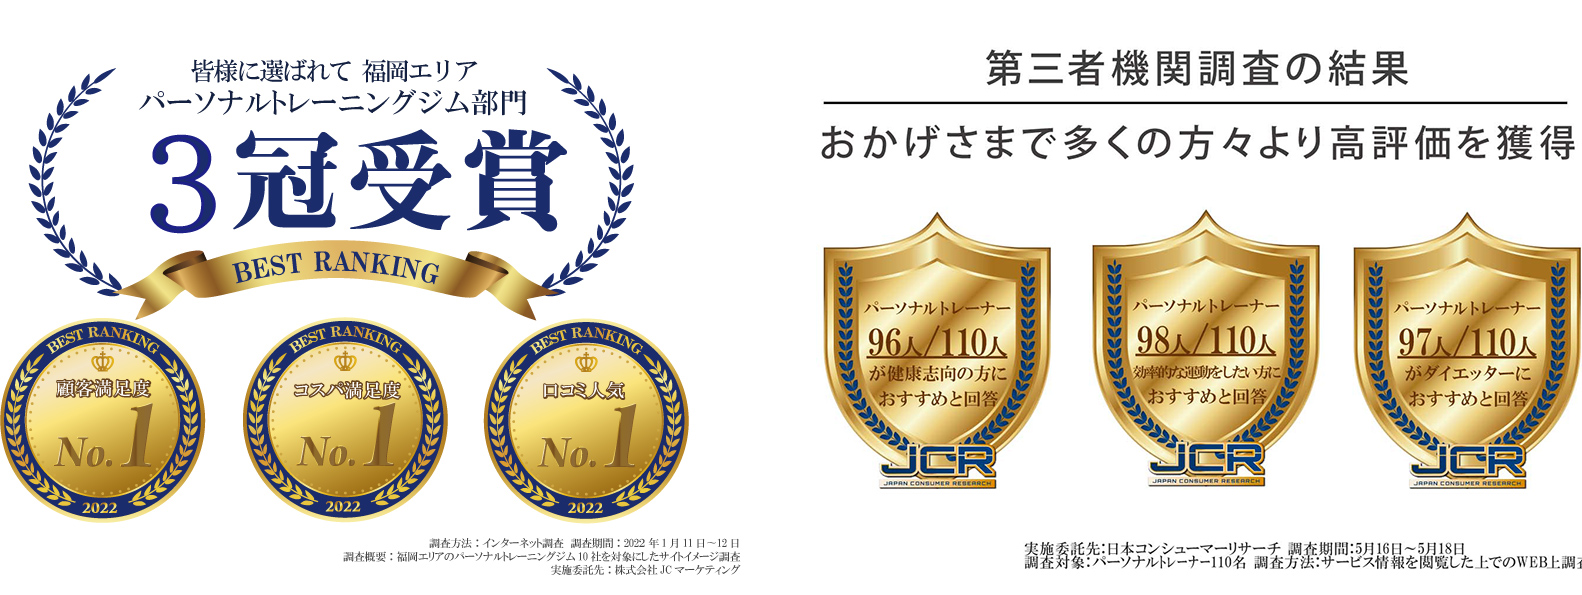 皆様に選ばれて 福岡エリア パーソナルトレーニングジム3冠受賞